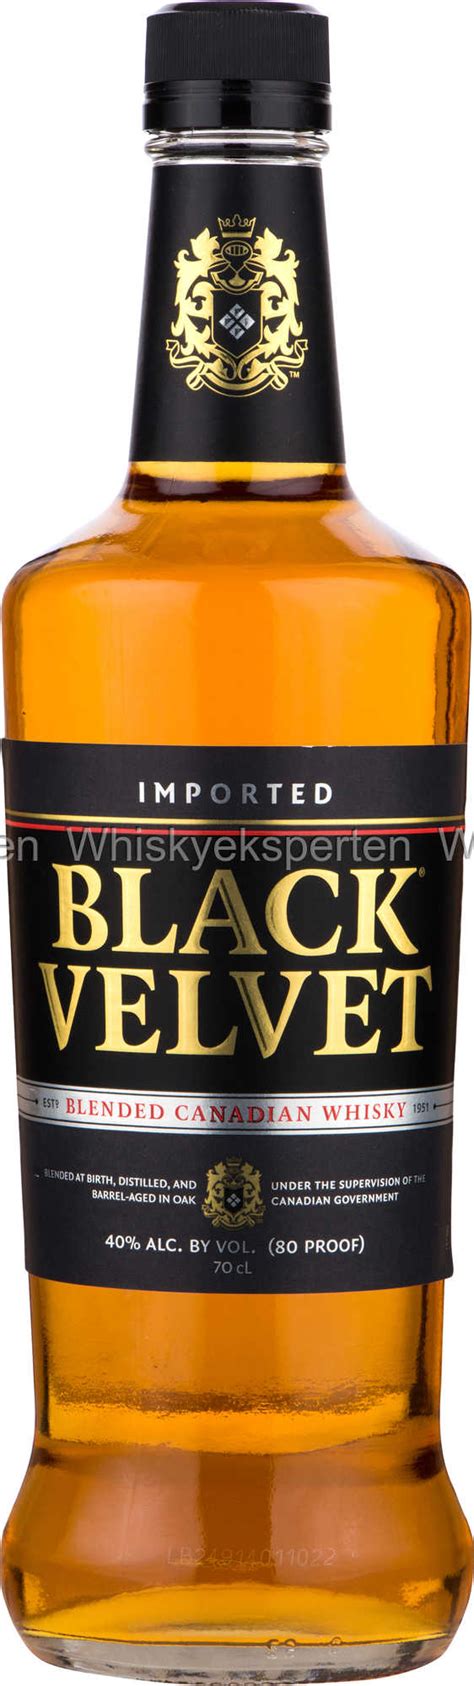 Black Velvet Canadisk Whisky